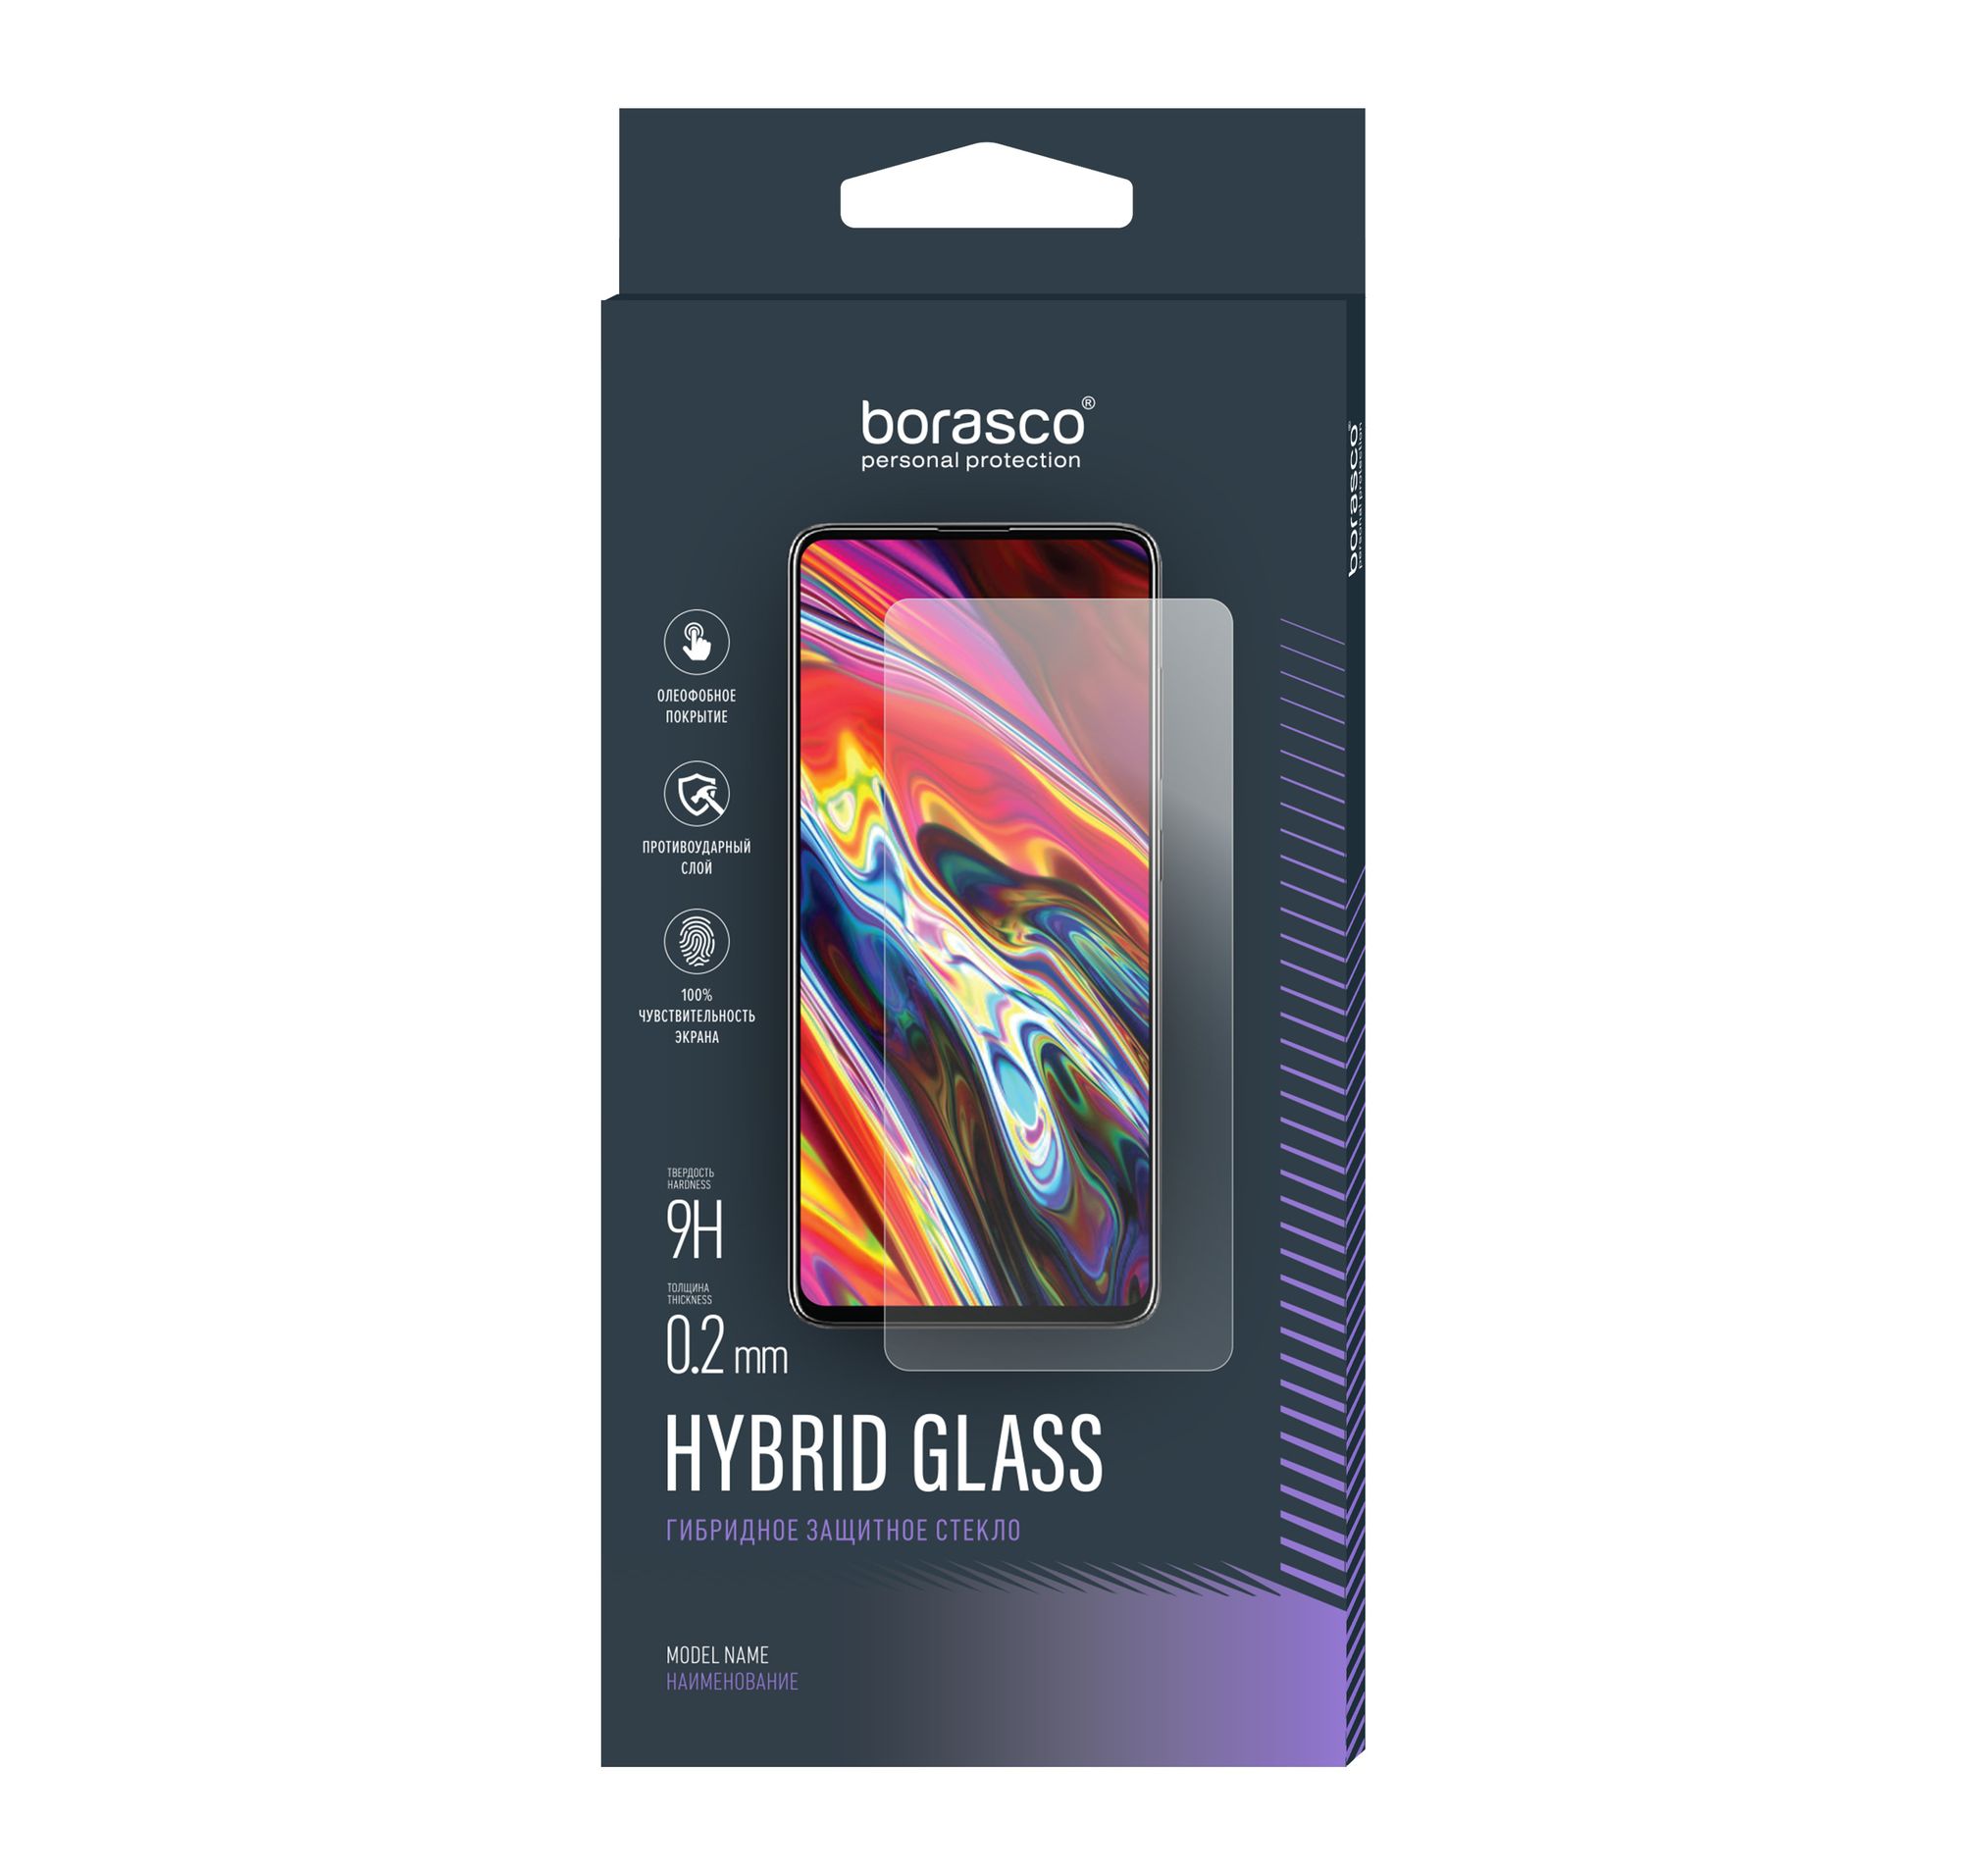 Стекло защитное Hybrid Glass VSP 0,26 мм для Huawei P Smart / Enjoy 7S защитное стекло для huawei p smart 20 комплект 3 шт 9d на весь экран